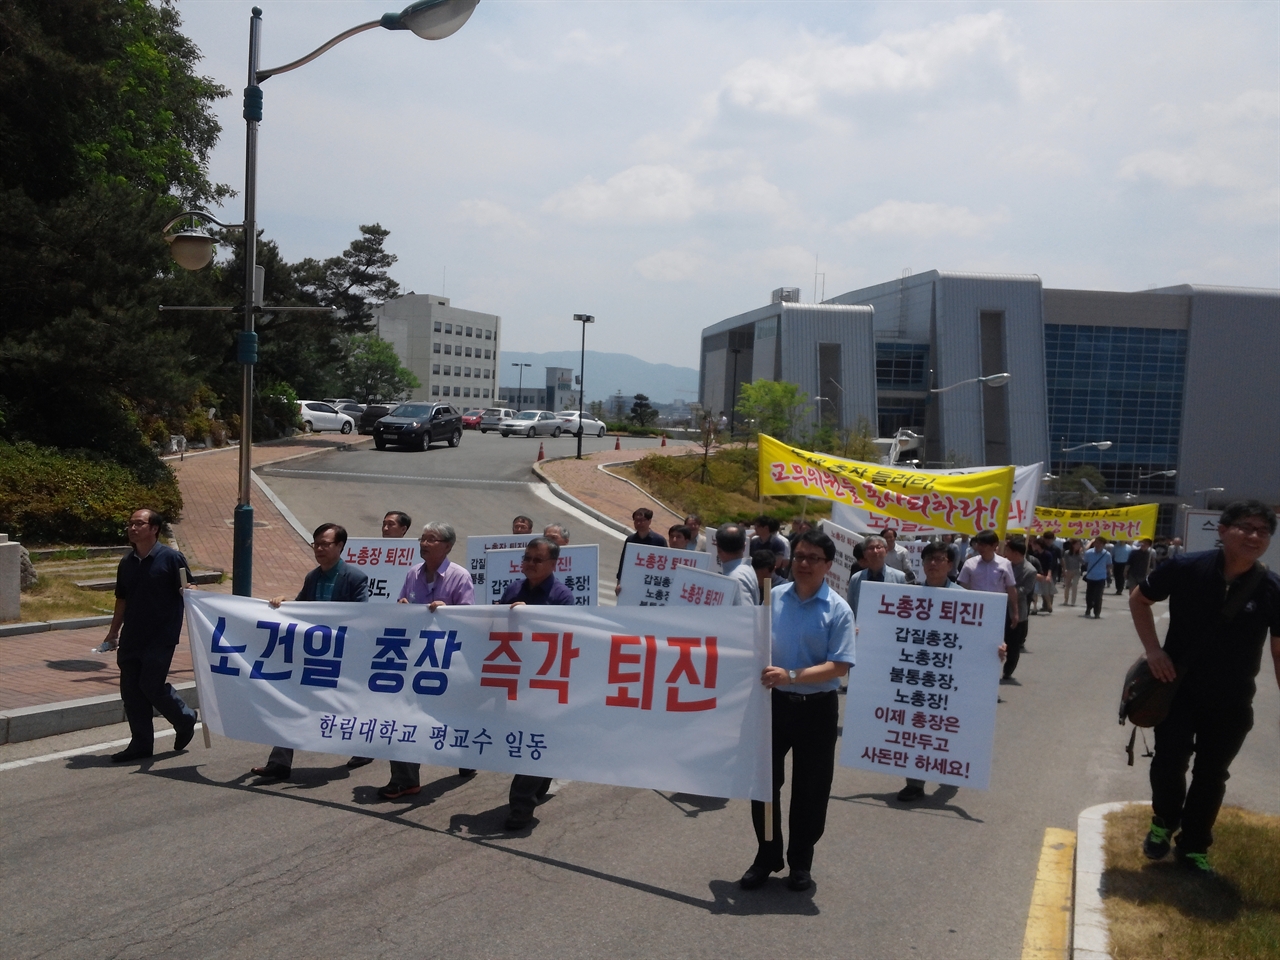 한림대 교수들이 노건일 총장 퇴진을 요구하며 행진하고 있다.